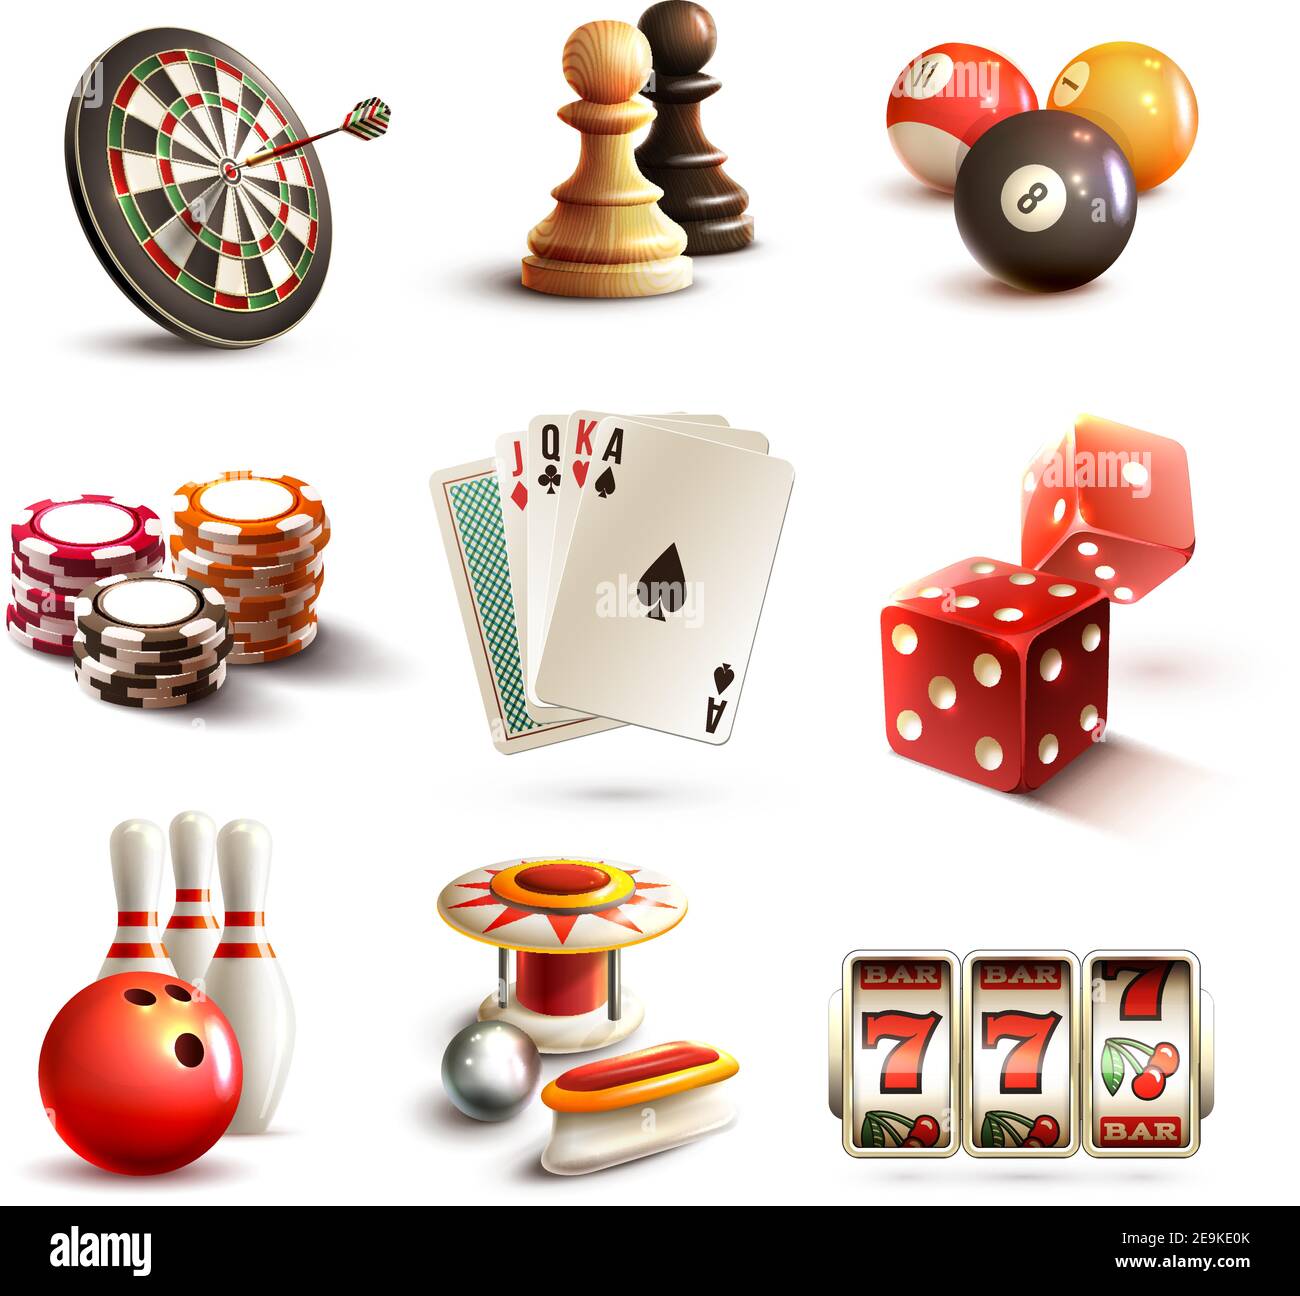 Spiel realistische Symbole mit Casino Sport und Freizeit-Spiele gesetzt Isolierte Vektordarstellung Stock Vektor